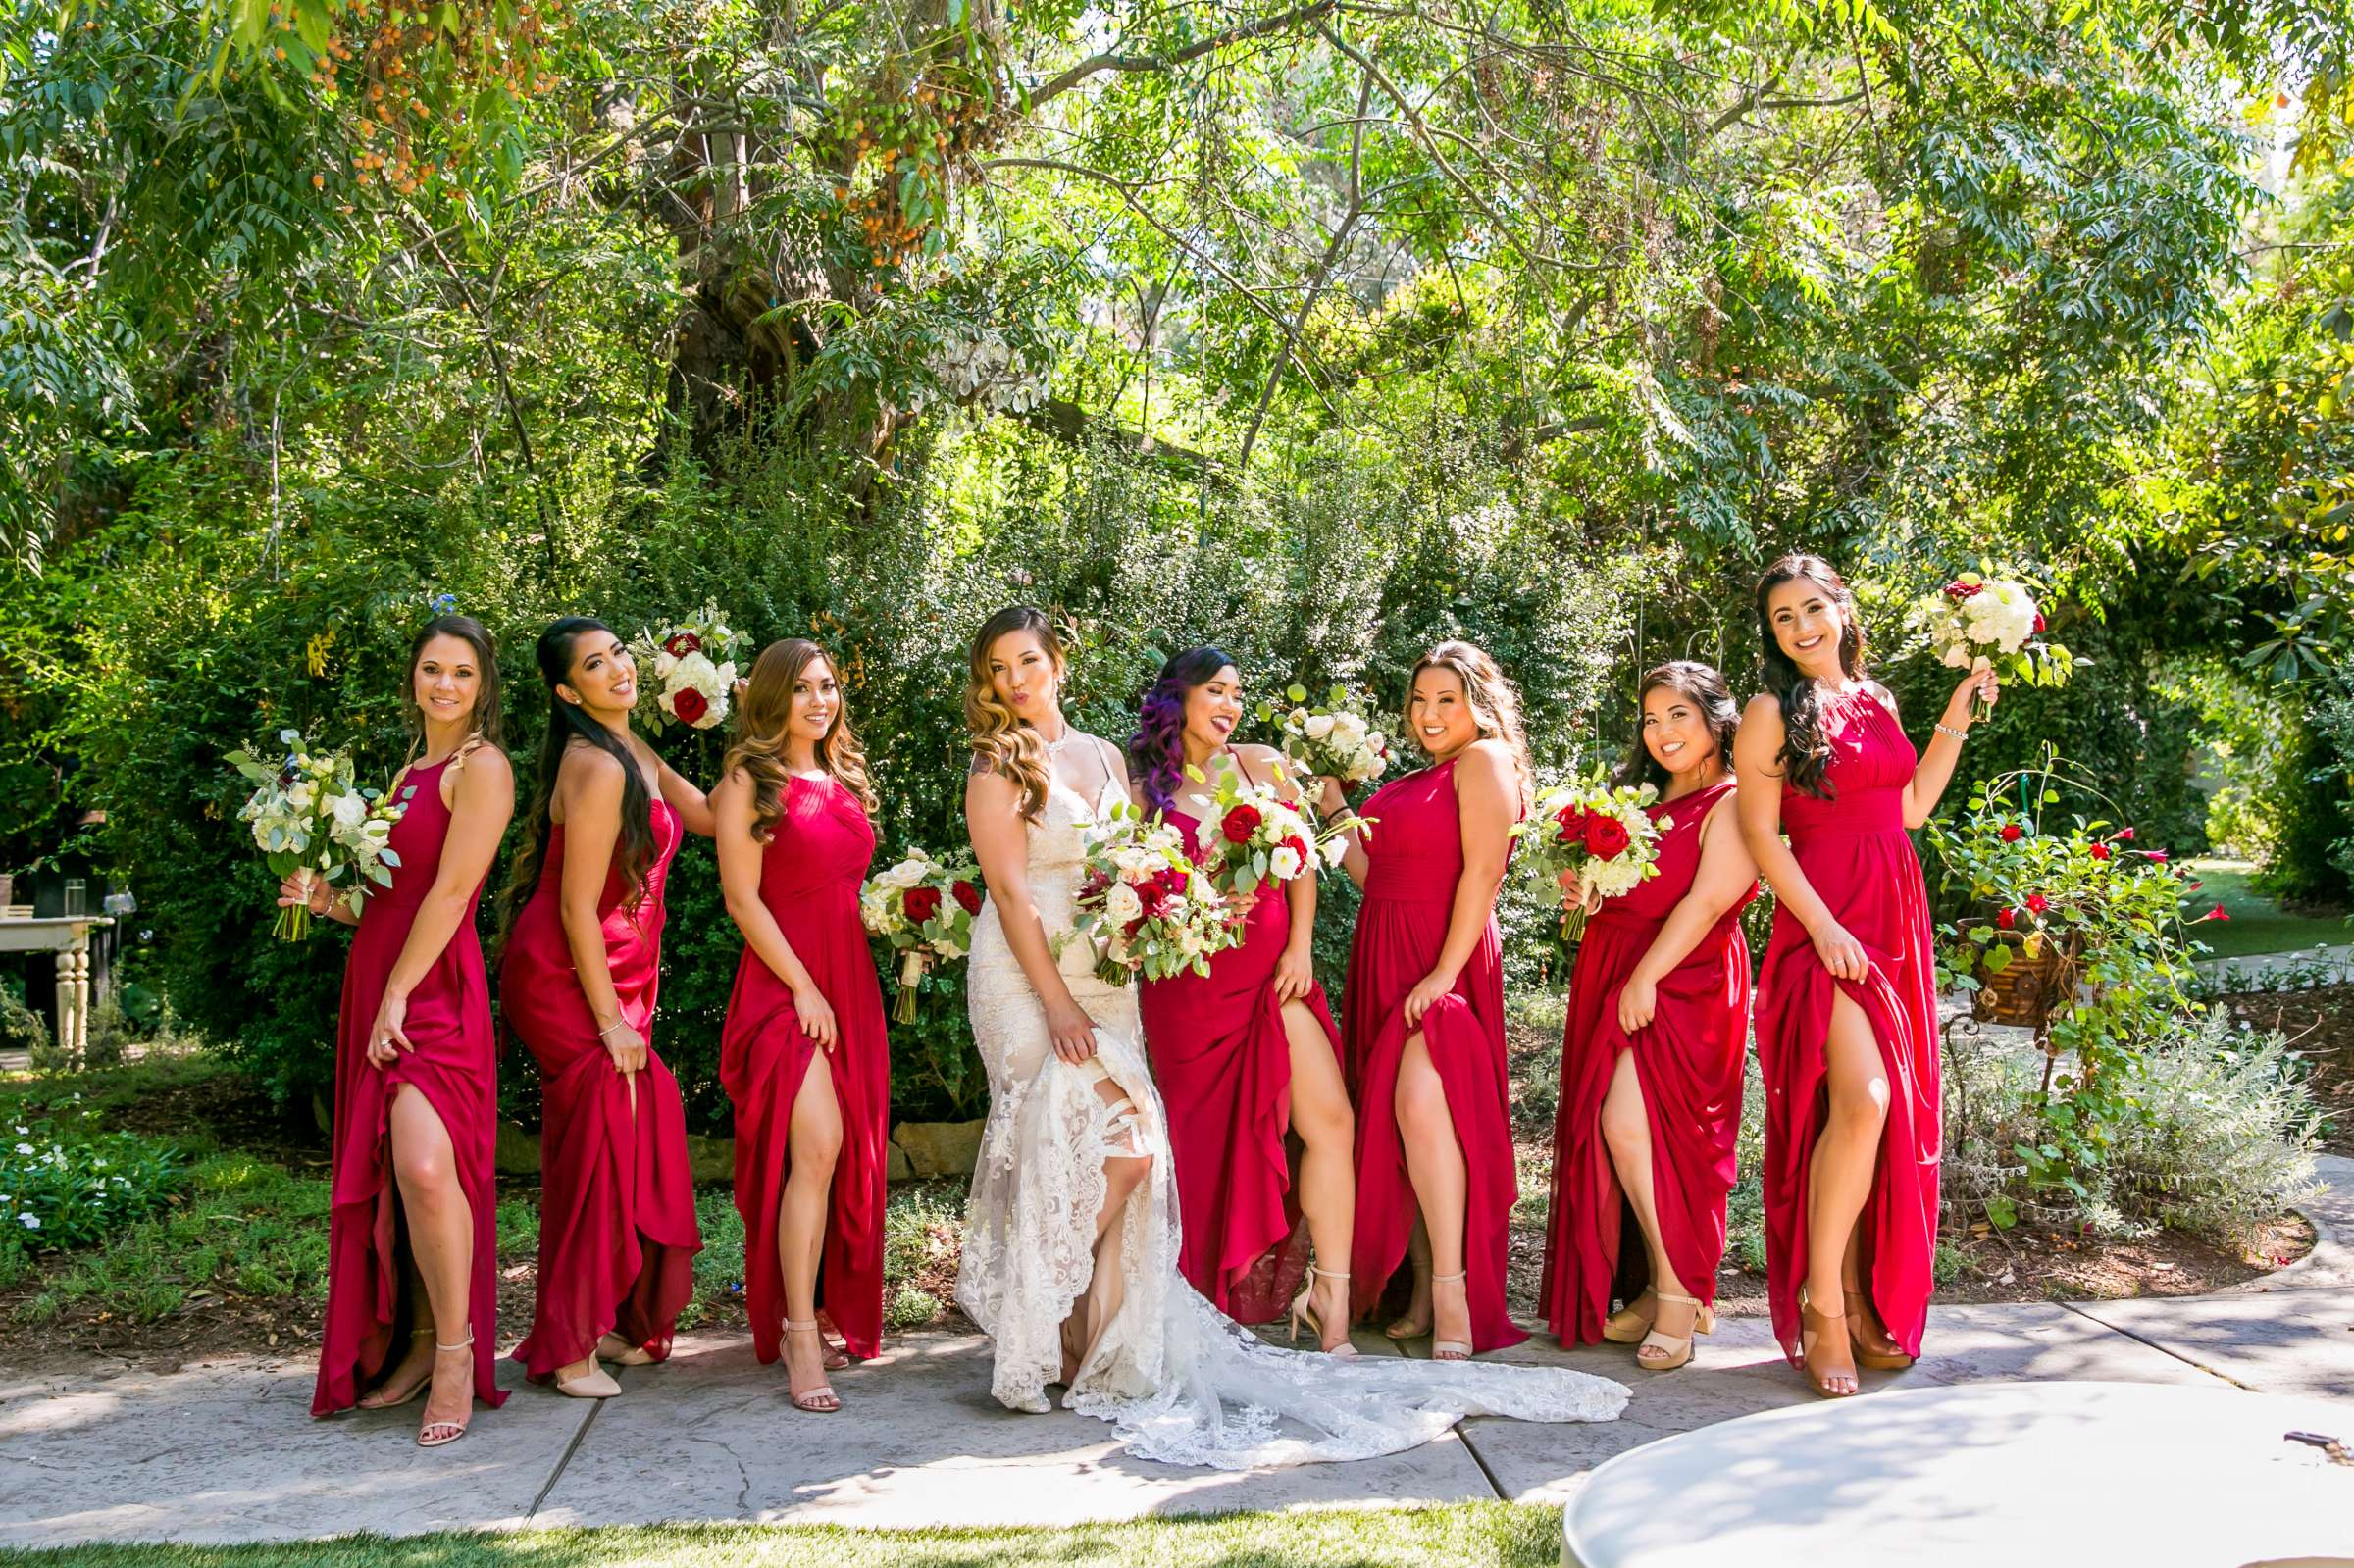 Twin Oaks House & Gardens Wedding Estate Wedding, Merrilynn and Trey Wedding Photo #52 by True Photography